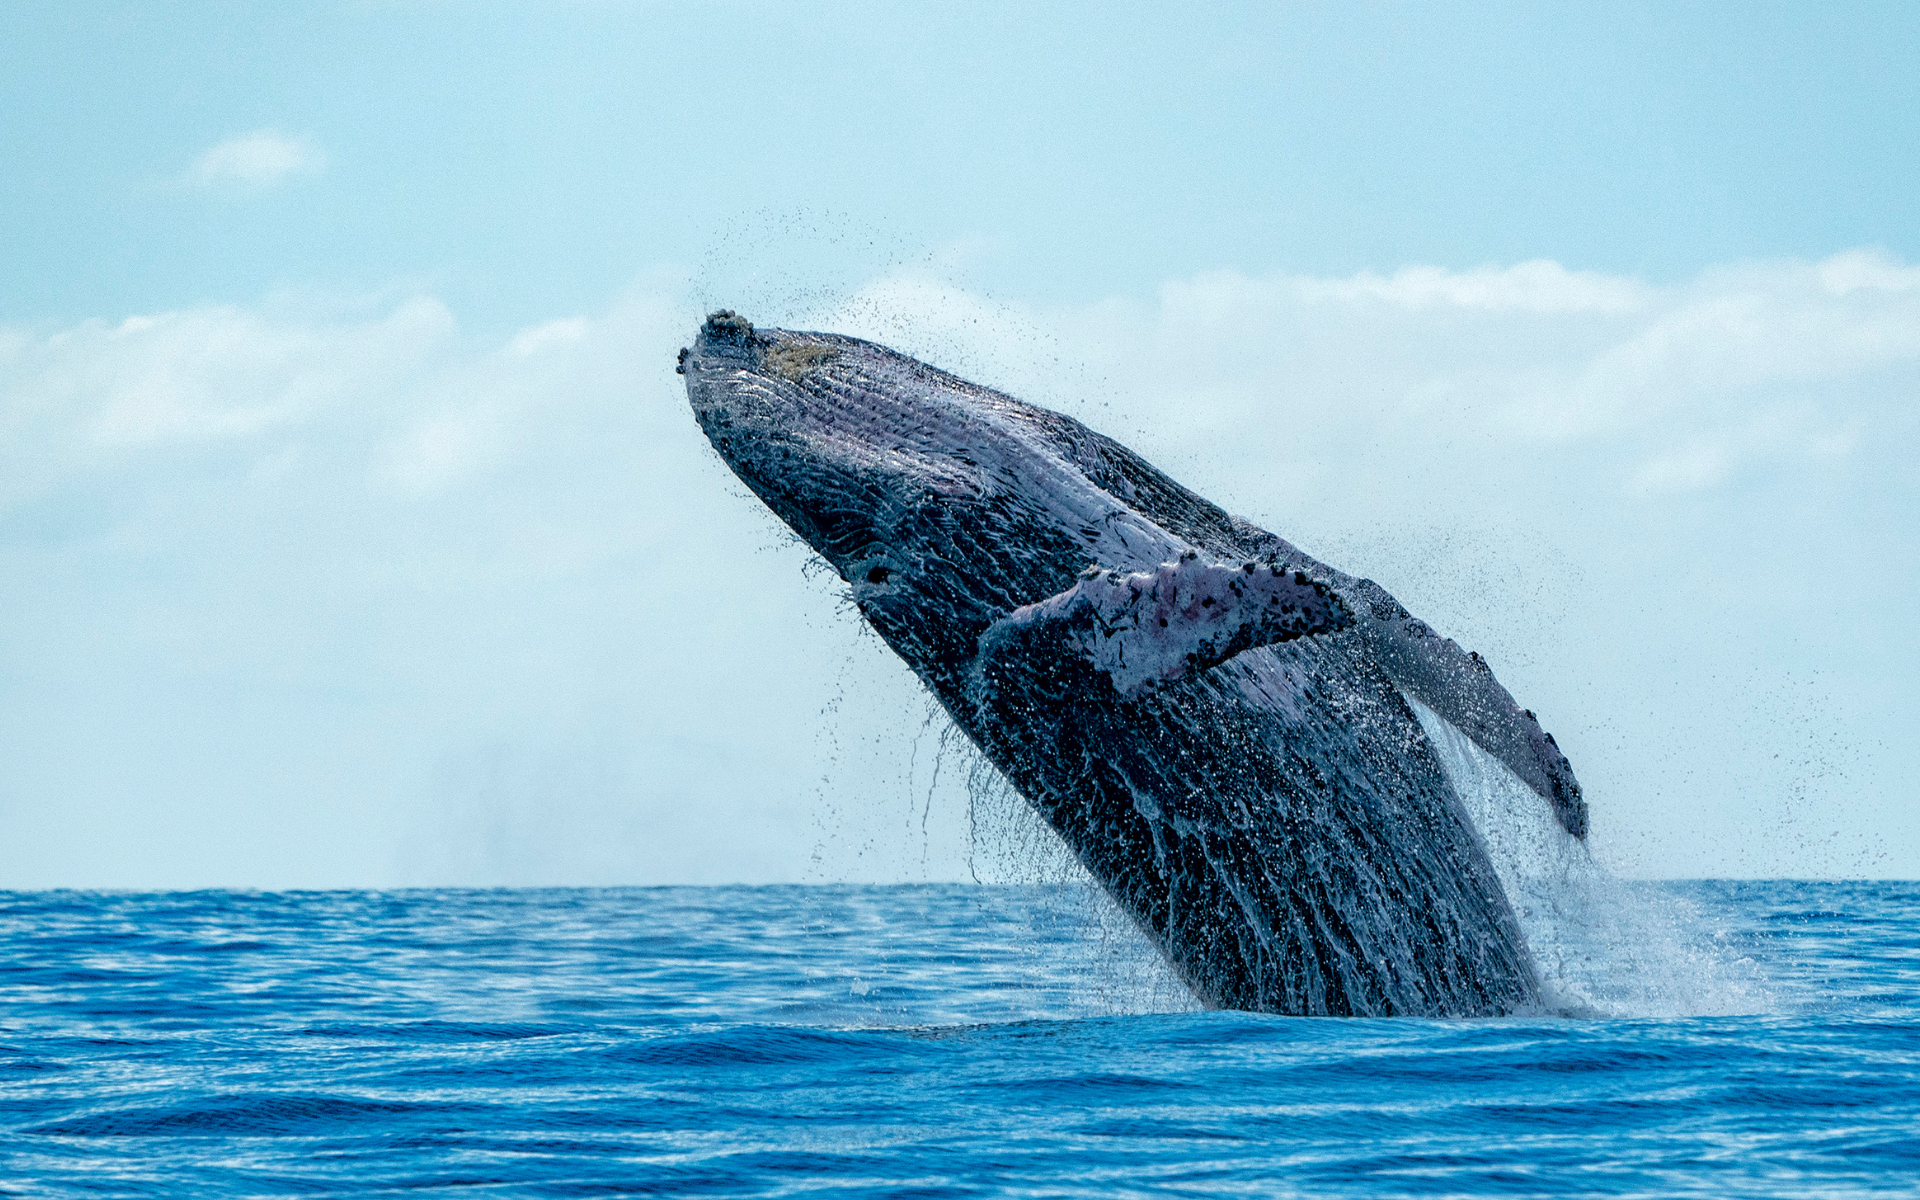 Una ballena jorobada saltando fuera del agua.